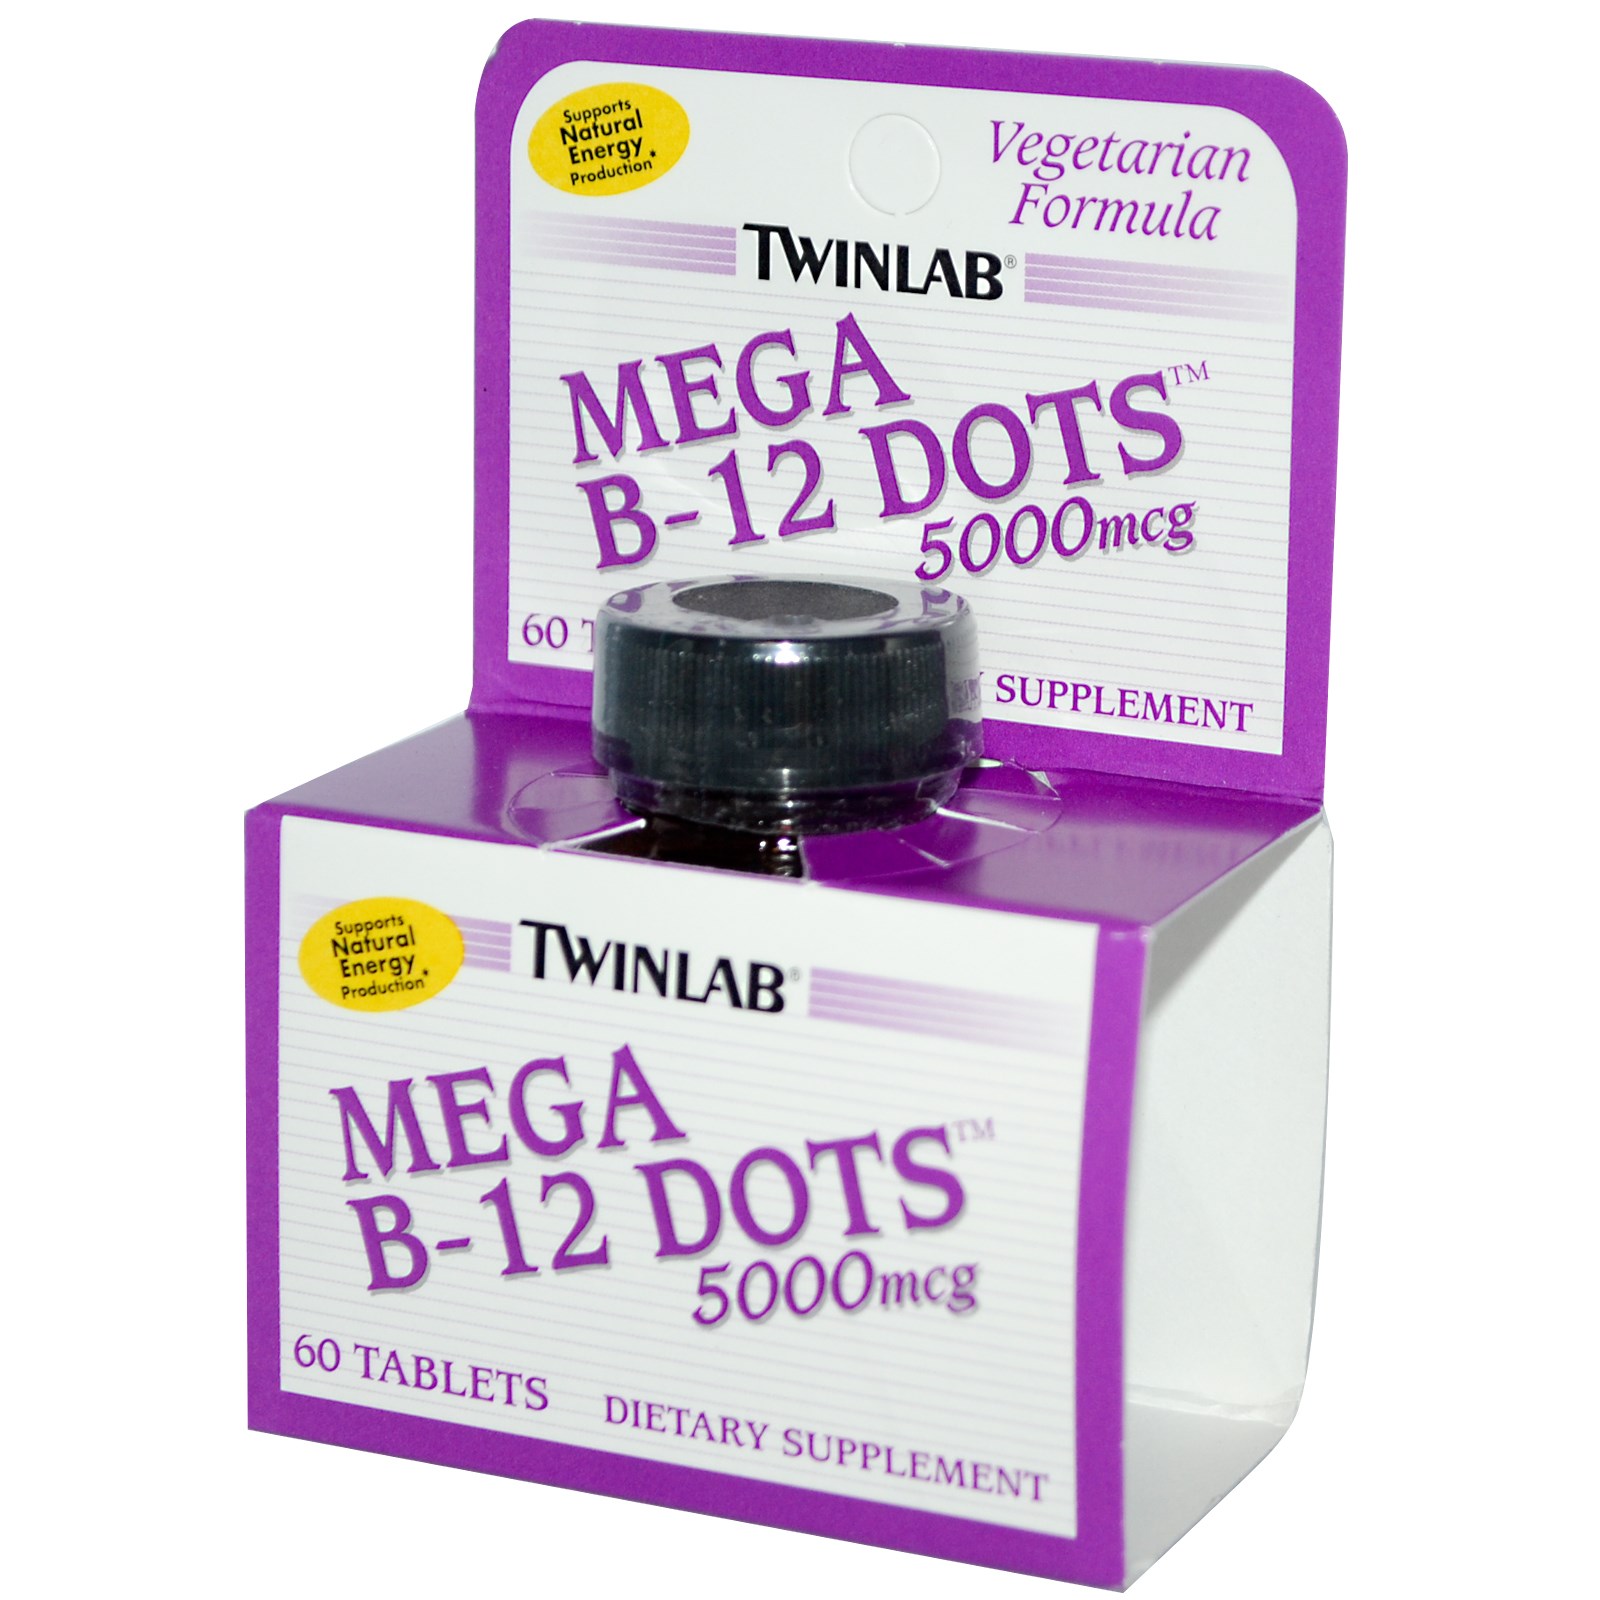 Twinlab Mega B-12 Dots 60